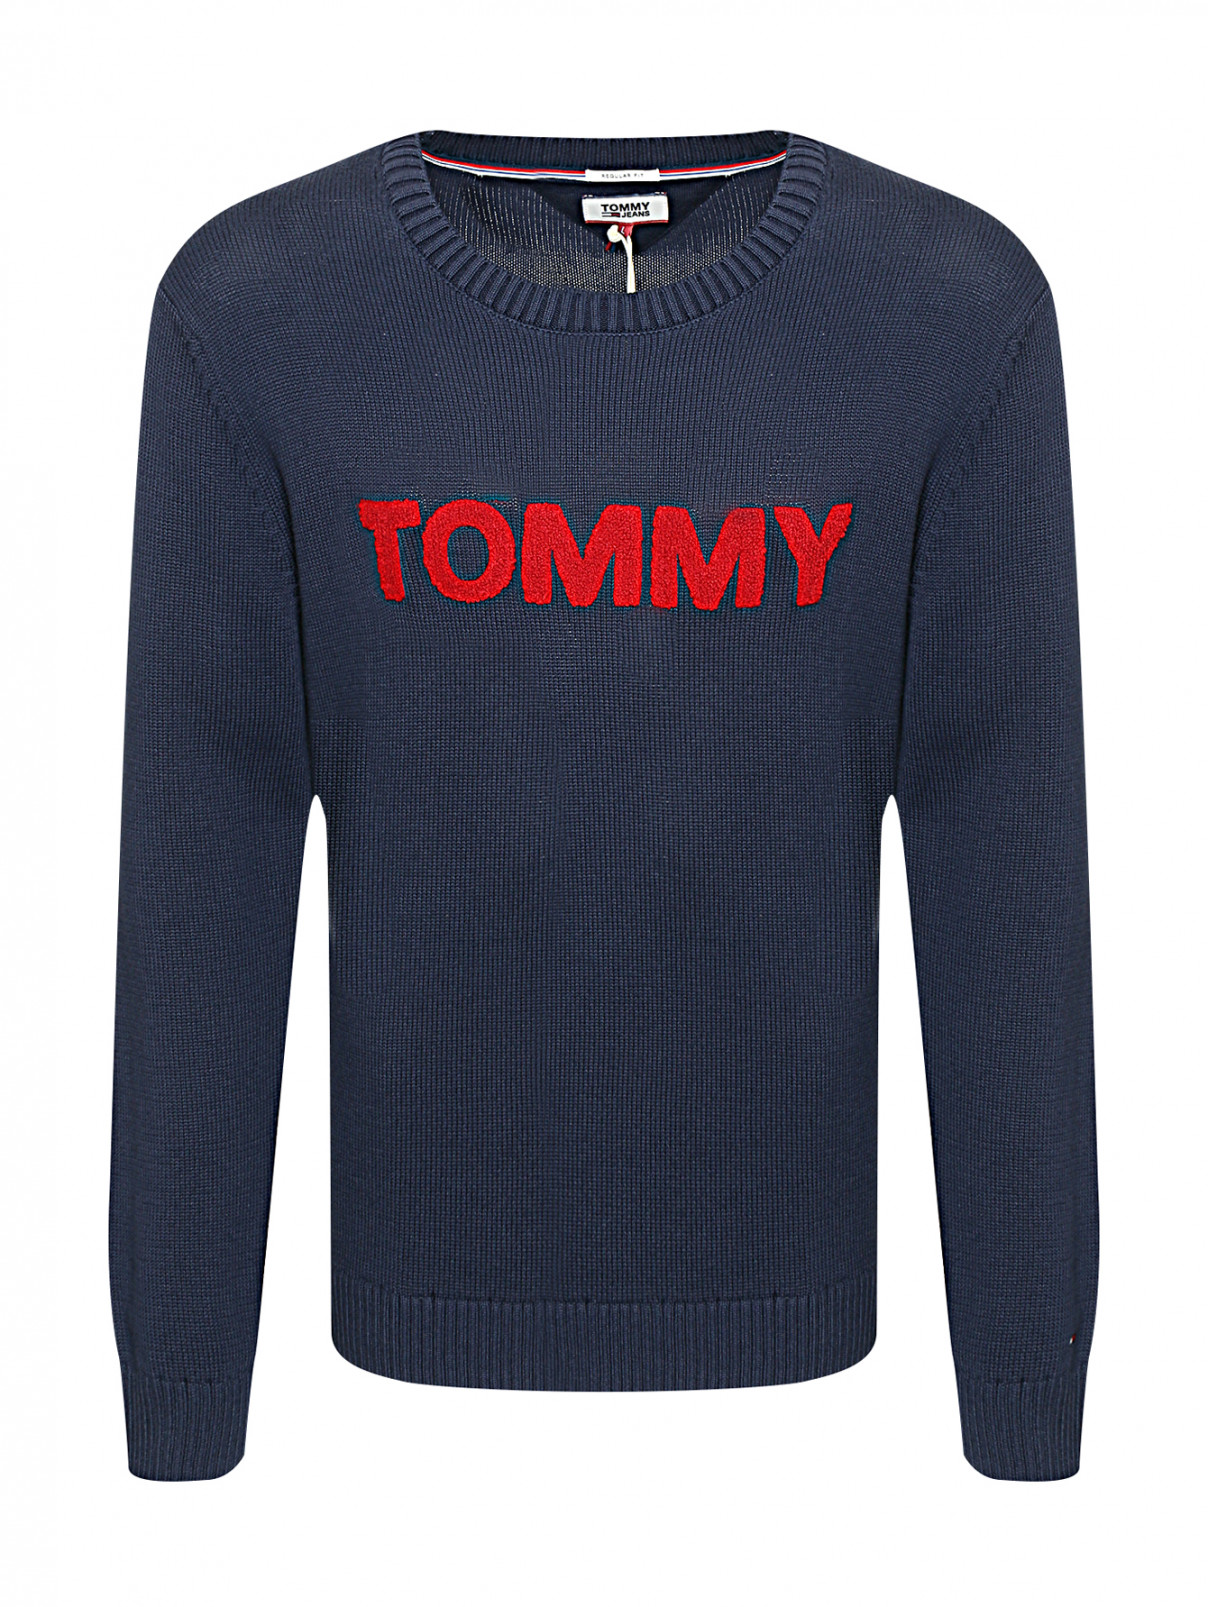 Джемпер из хлопка с аппликацией Tommy Jeans  –  Общий вид  – Цвет:  Синий